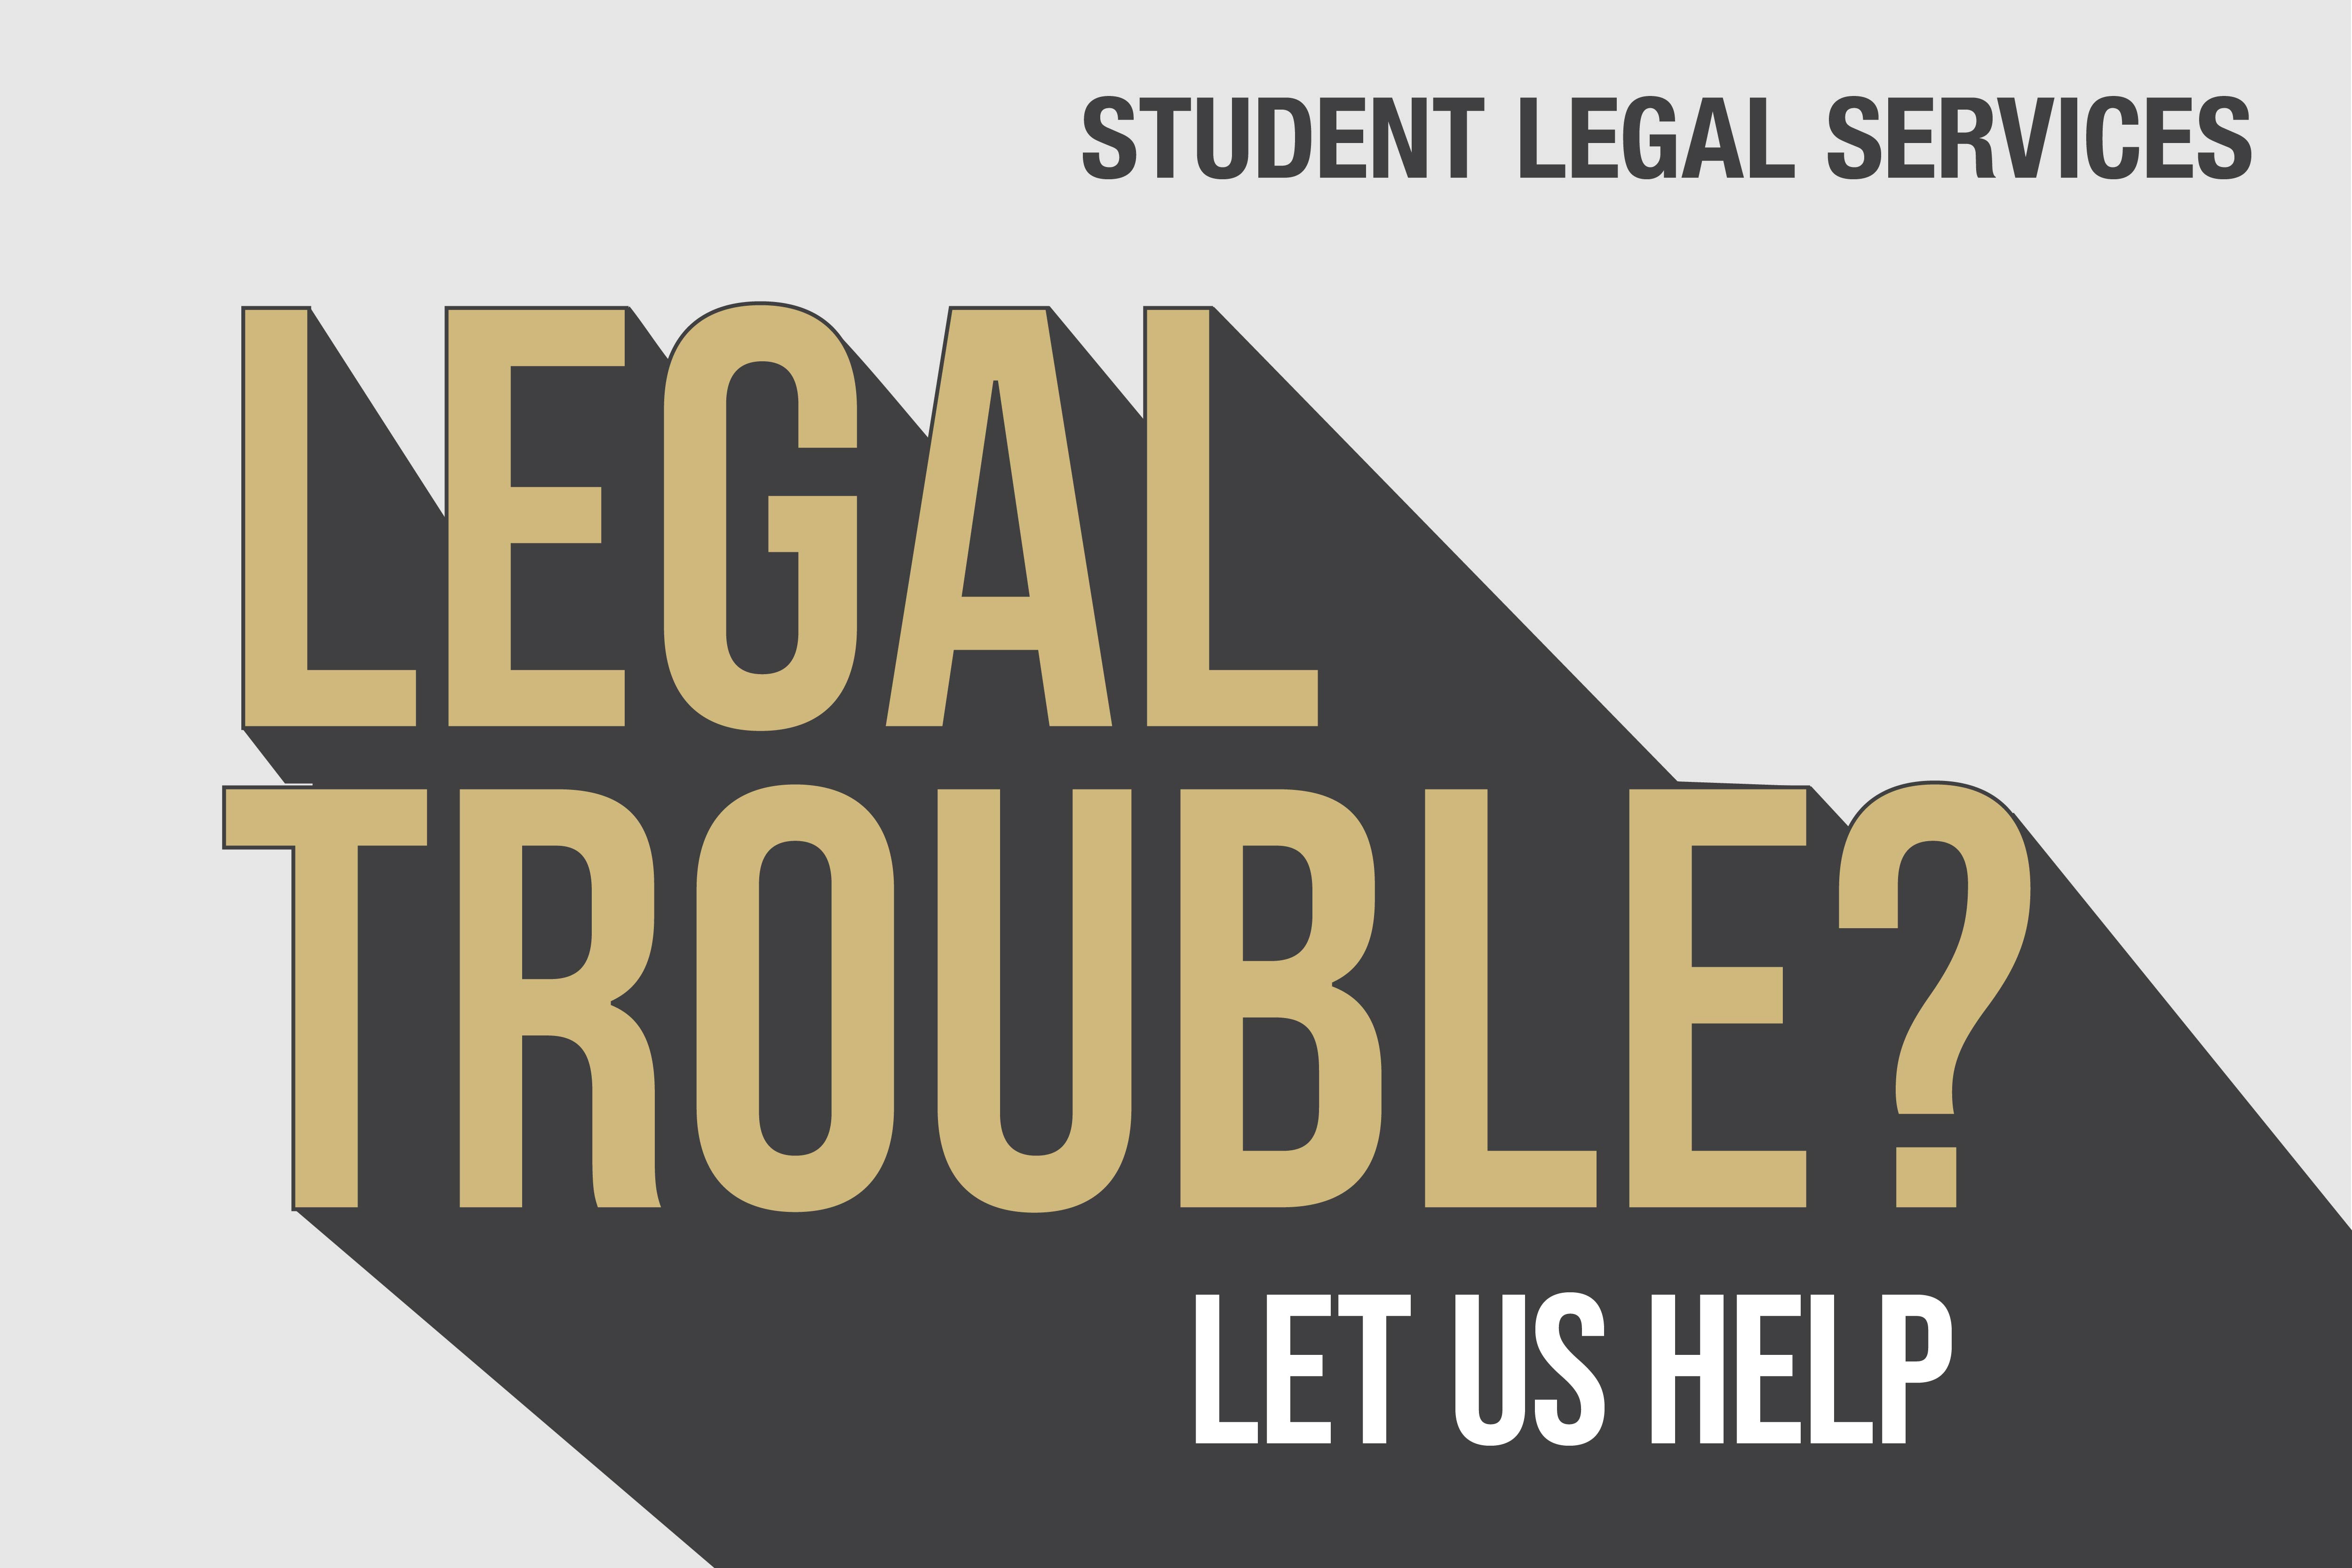 Legal trouble? Let us help